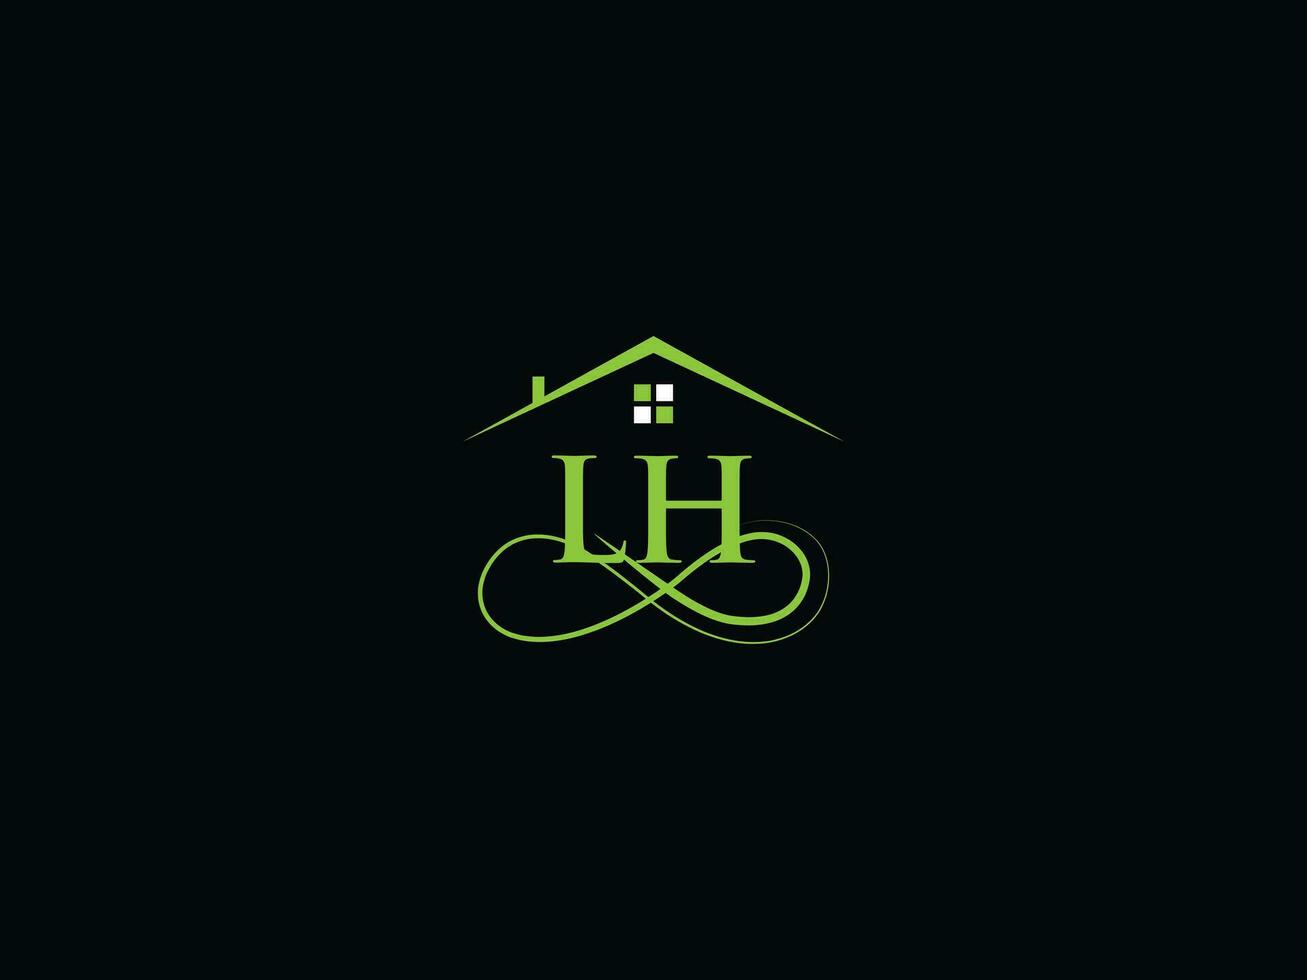 abstrakt lh Logo Gebäude, Luxus lh echt Nachlass Brief Logo Symbol vektor